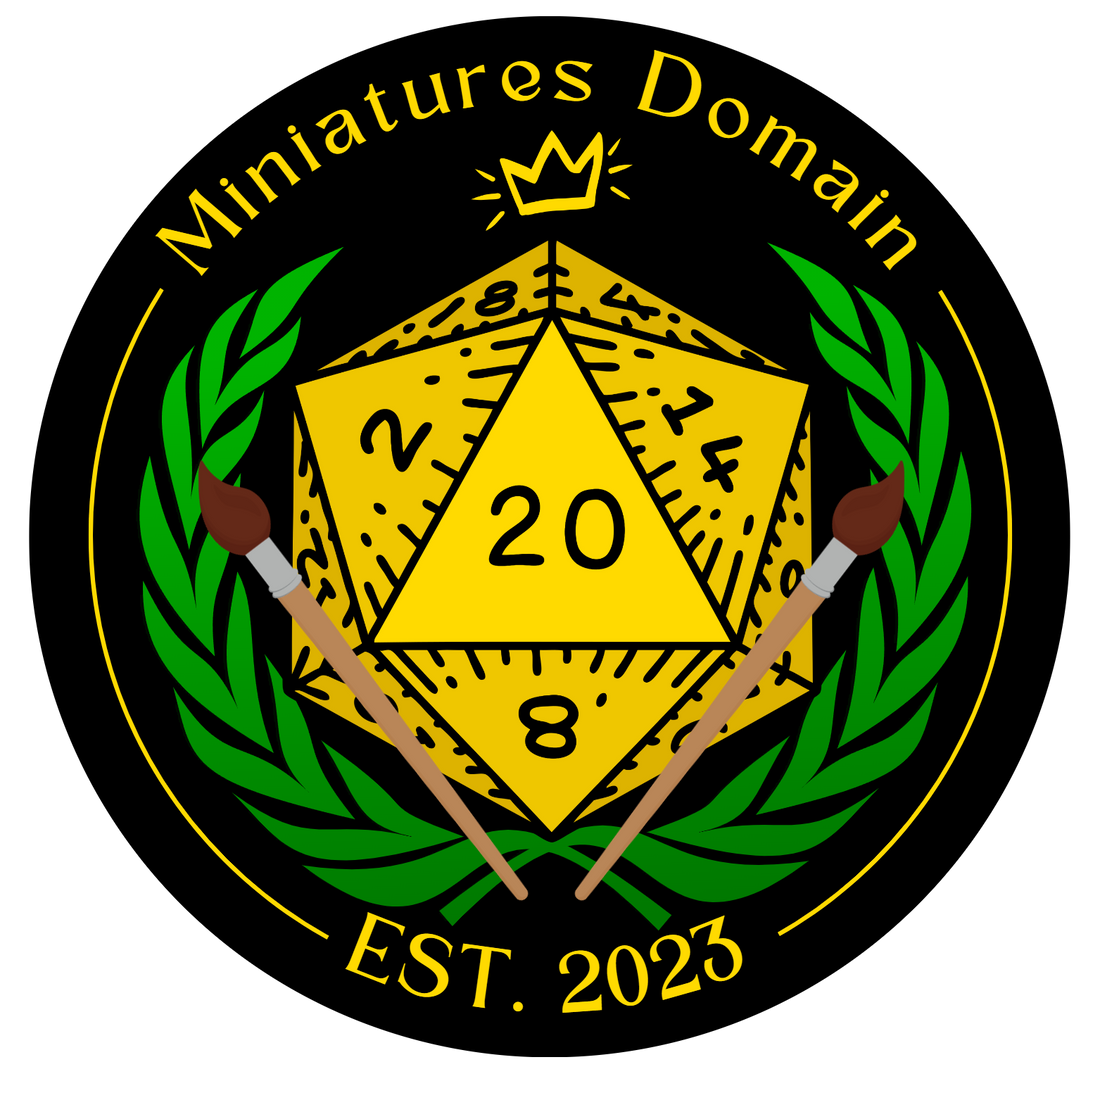 Miniatures Domain EST. 2023